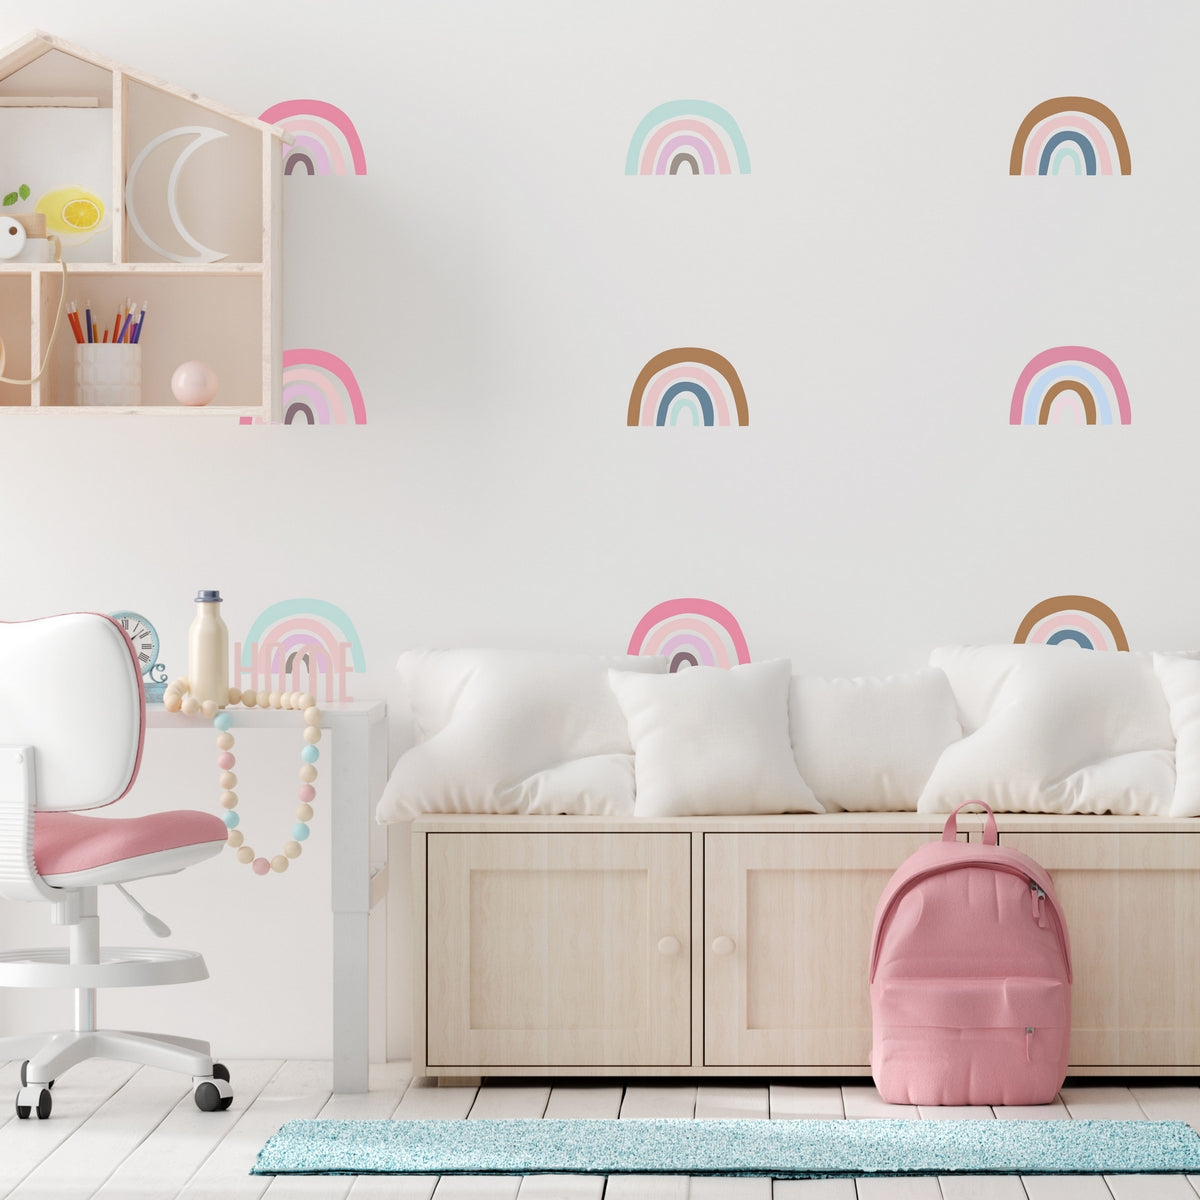 Furniture Kids Room, Decorative Furniture Decals